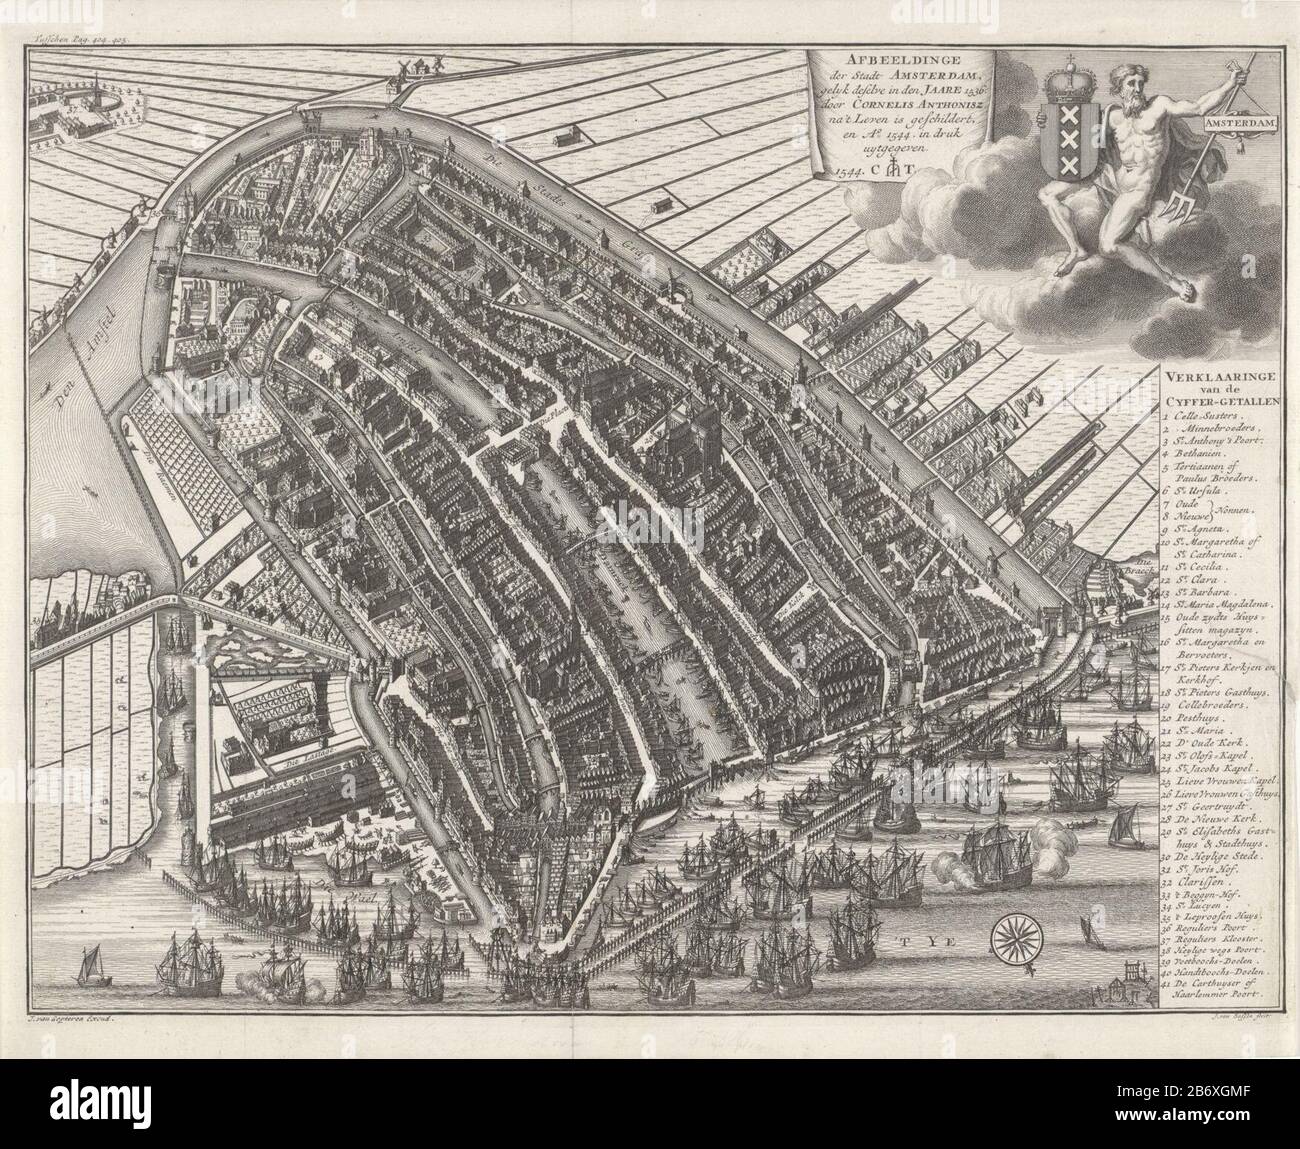 Kaart van Amsterdam à vogelvlucht, anno 1544 Afbeeldinge der stadt Amsterdam  () (objet titel op) carte d'Amsterdam en un mot (orientation sud-ouest  ci-dessus) à partir de l'année 1544 avec de nombreux navires.